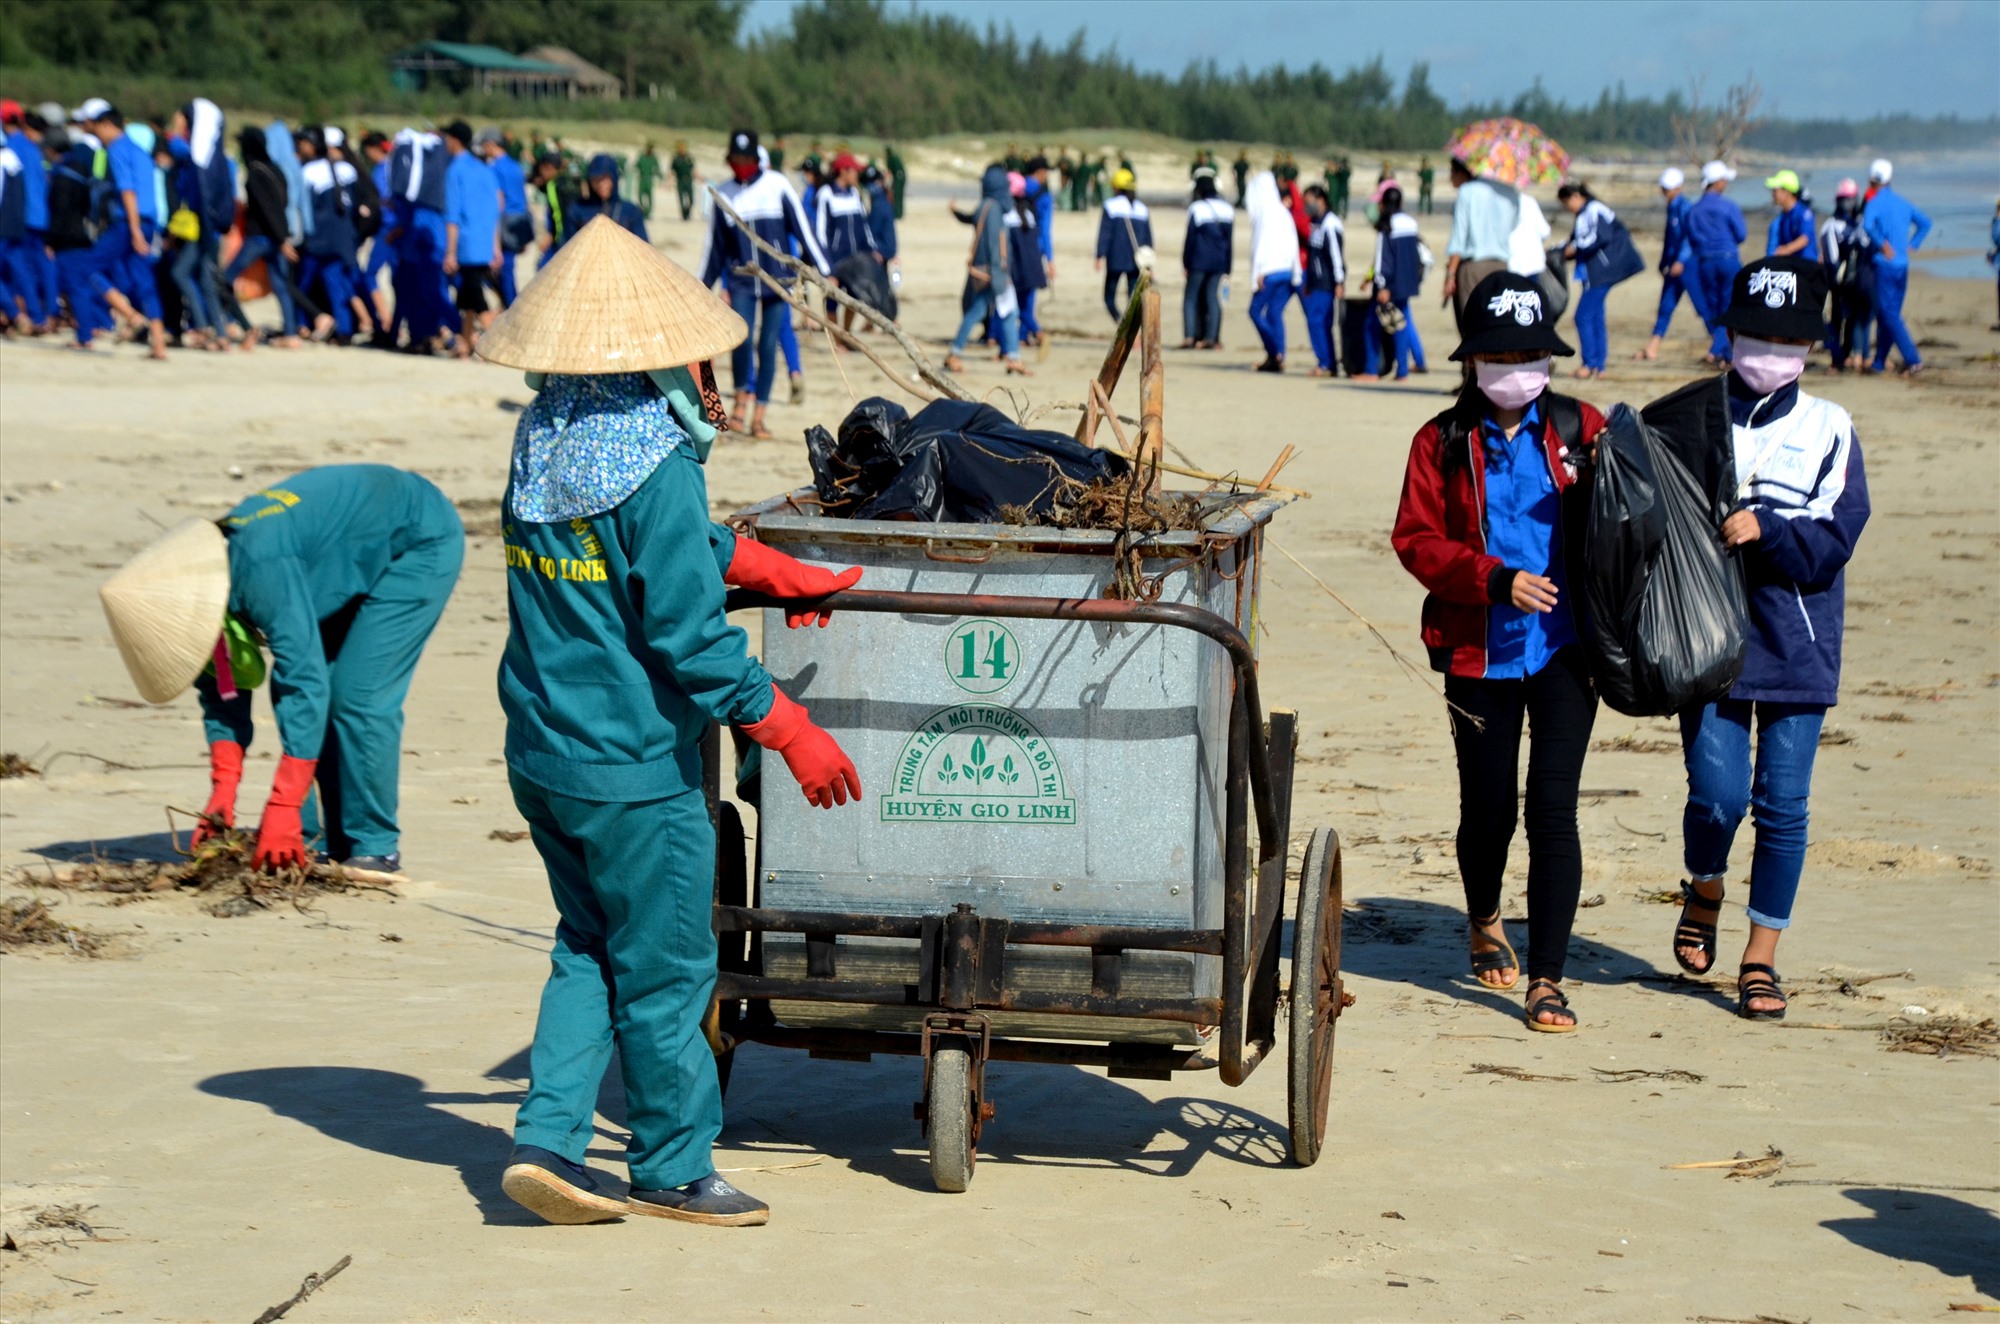 Ra quần làm sạch bãi biển - Ảnh: Trần Tuyền